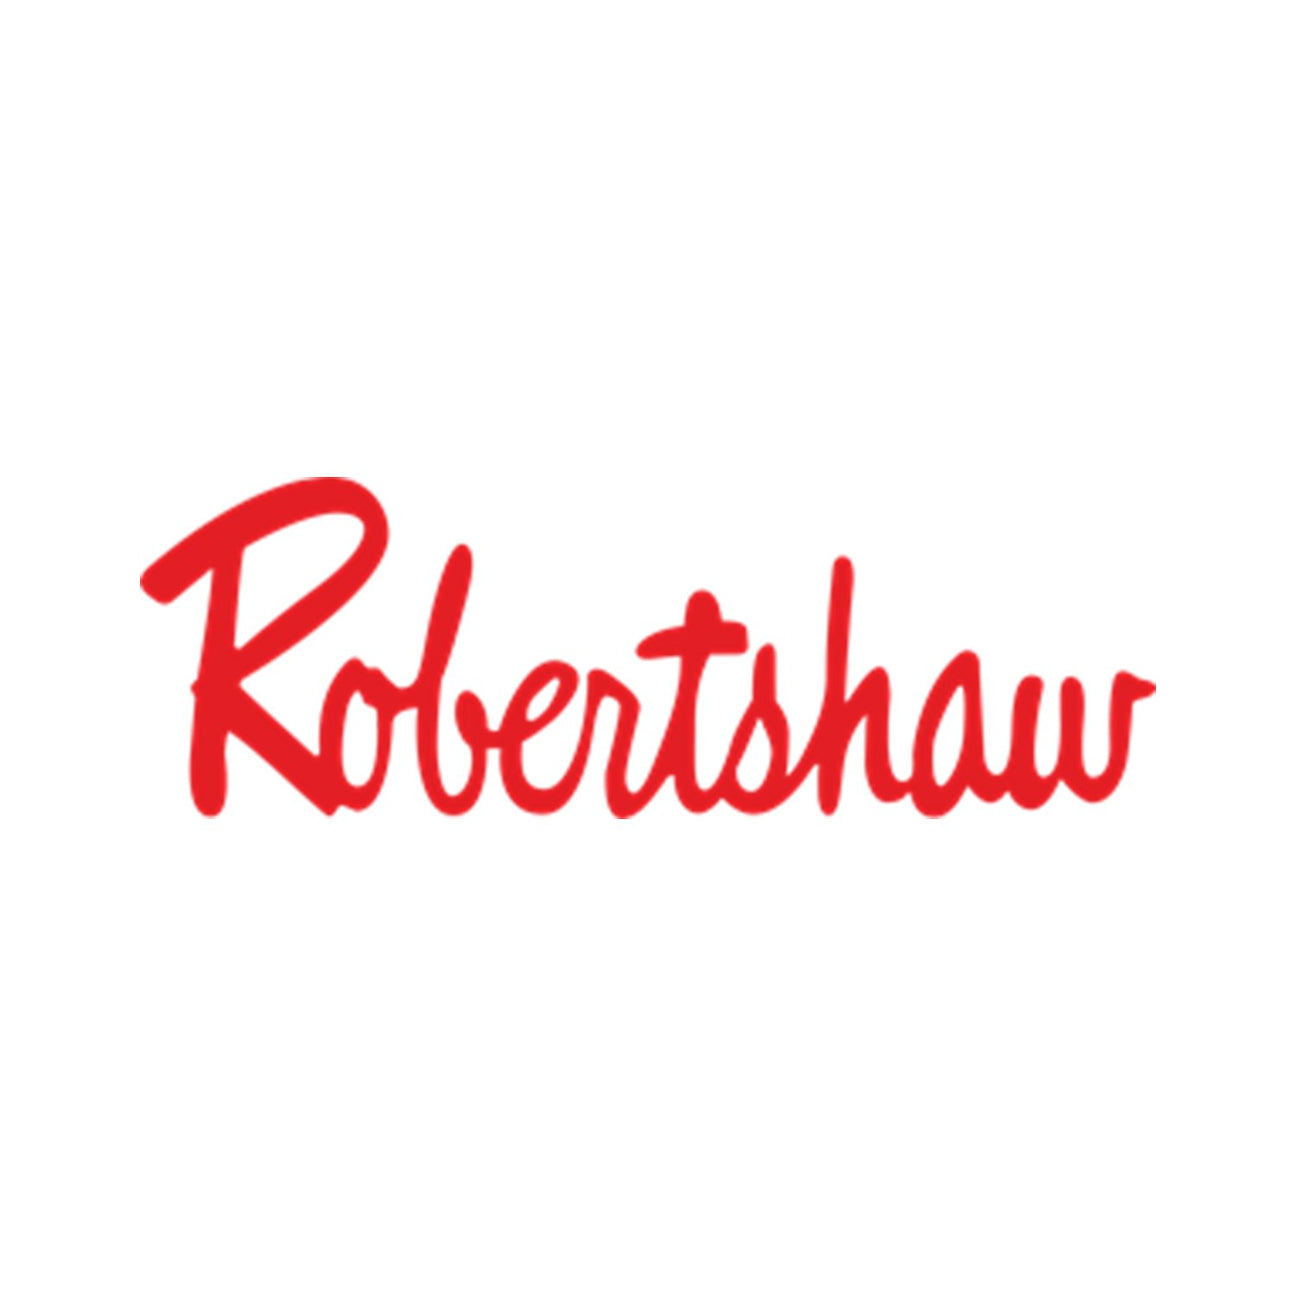 Robertshaw - My Oven Spares